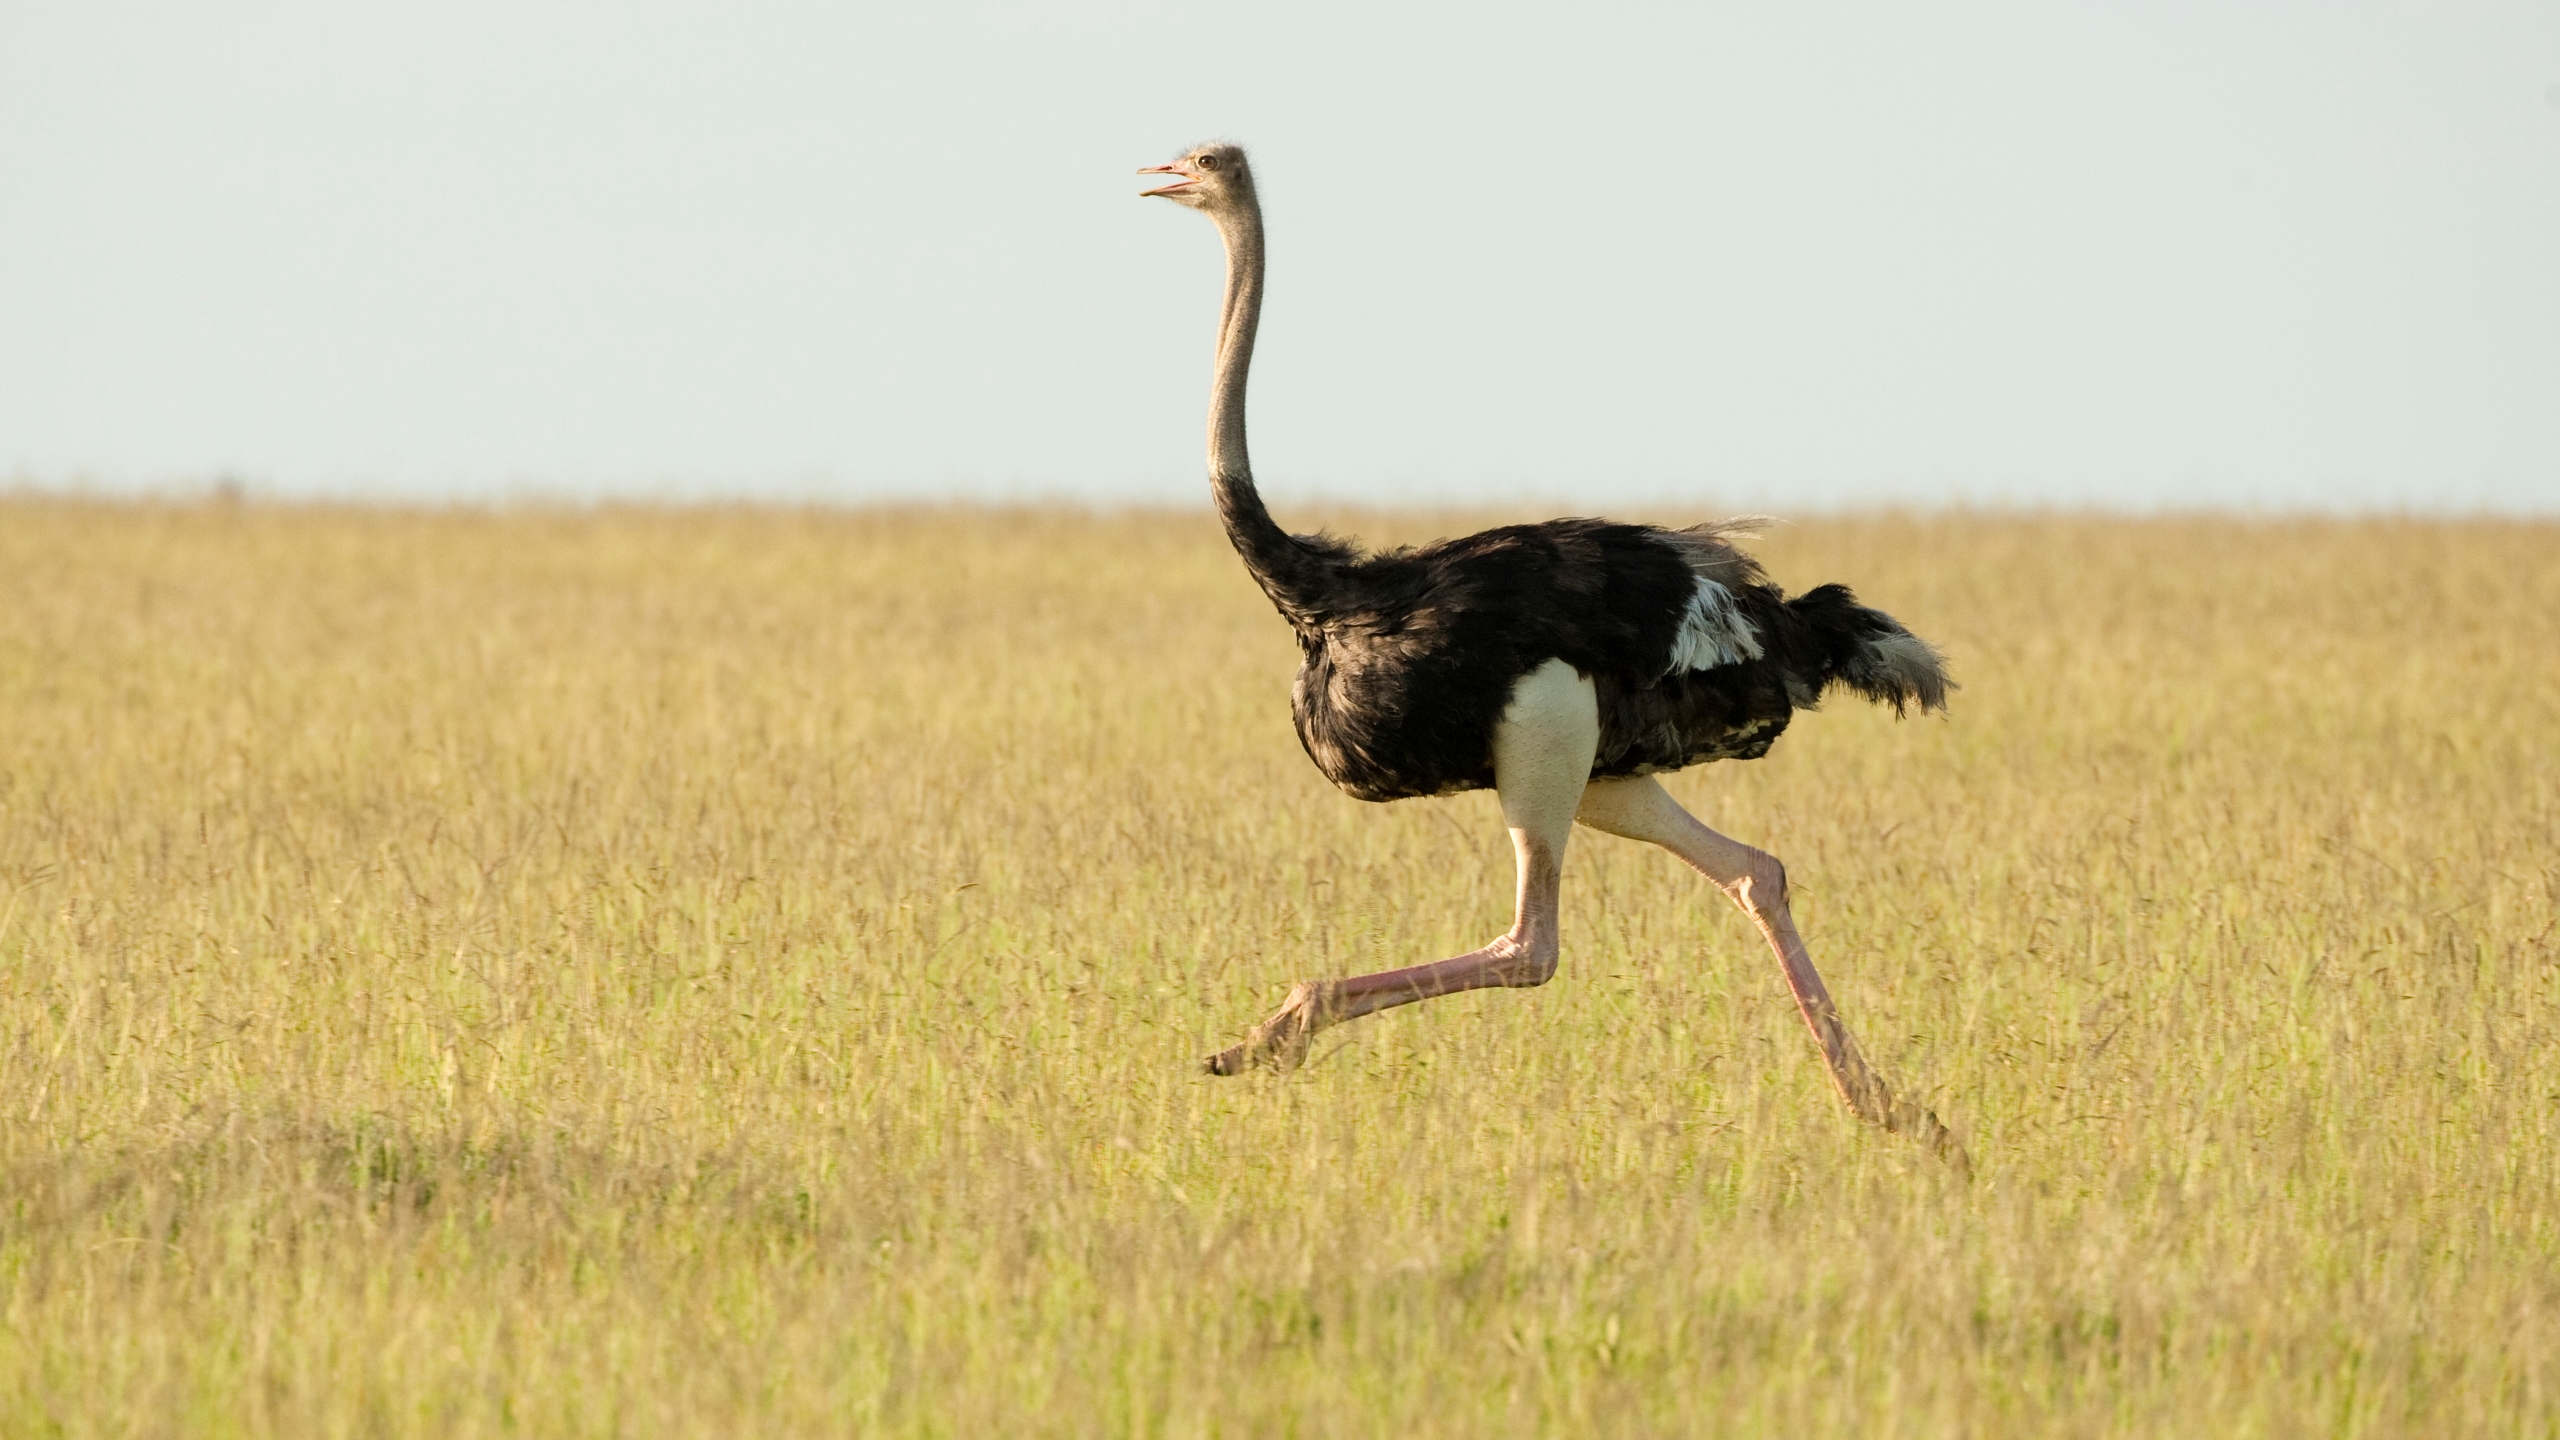 A photo of a male ostrich running in grass in the Masai Mara Game Reserve in Kenya